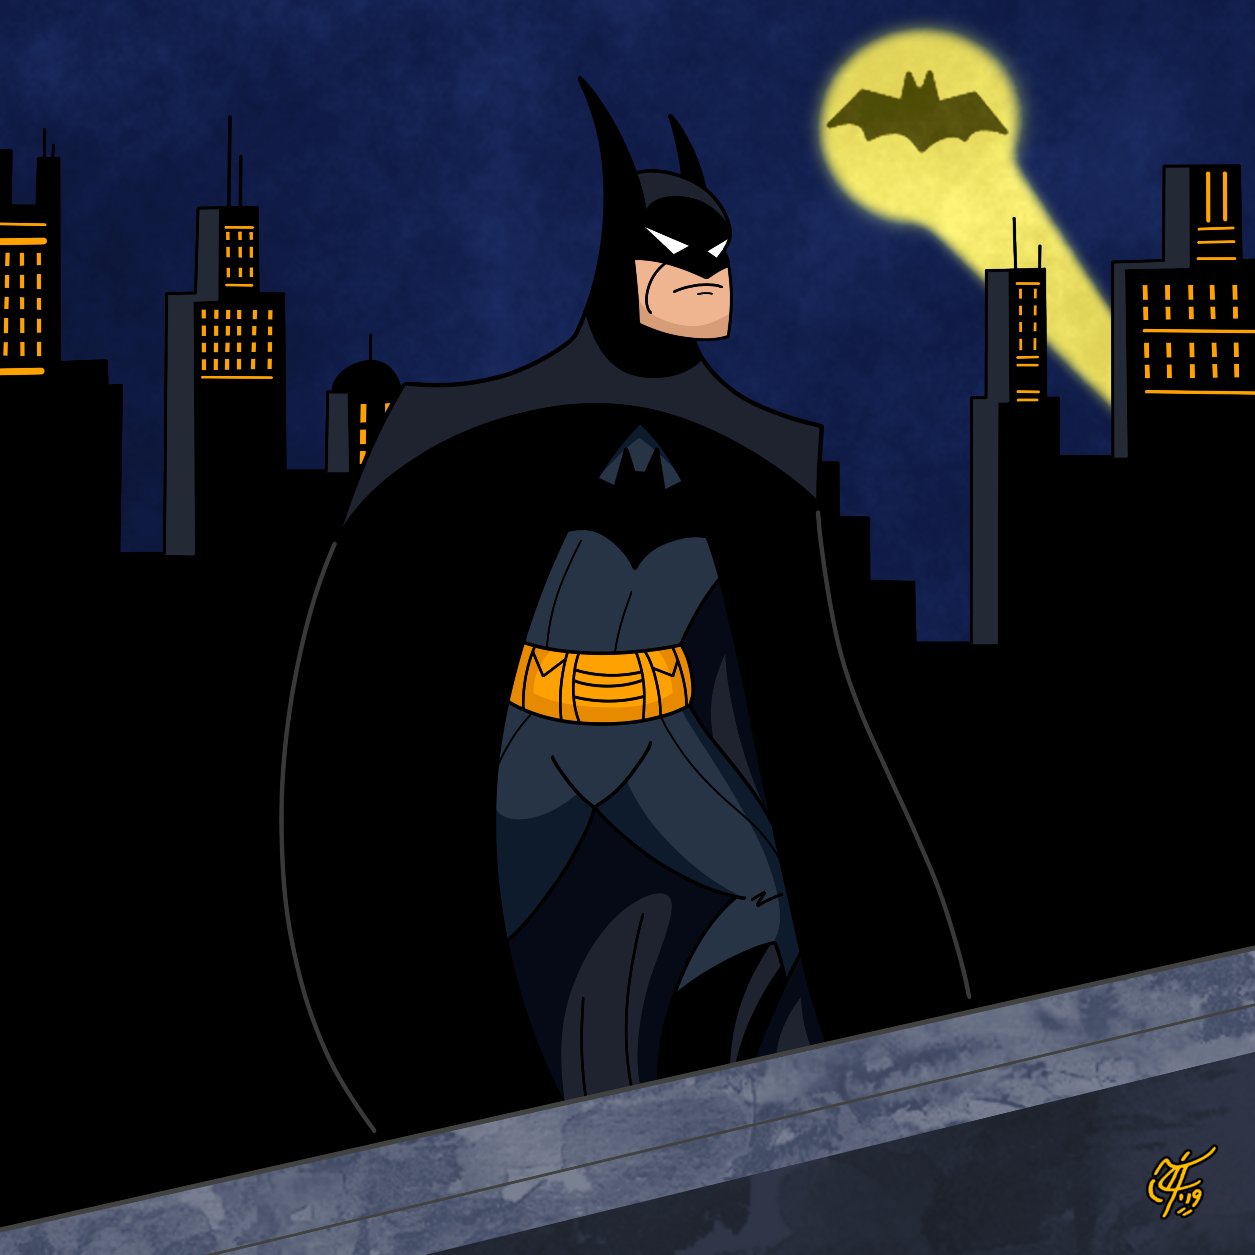 蝙蝠侠80周年 华纳与DC在十个大都市点亮蝙蝠侠灯